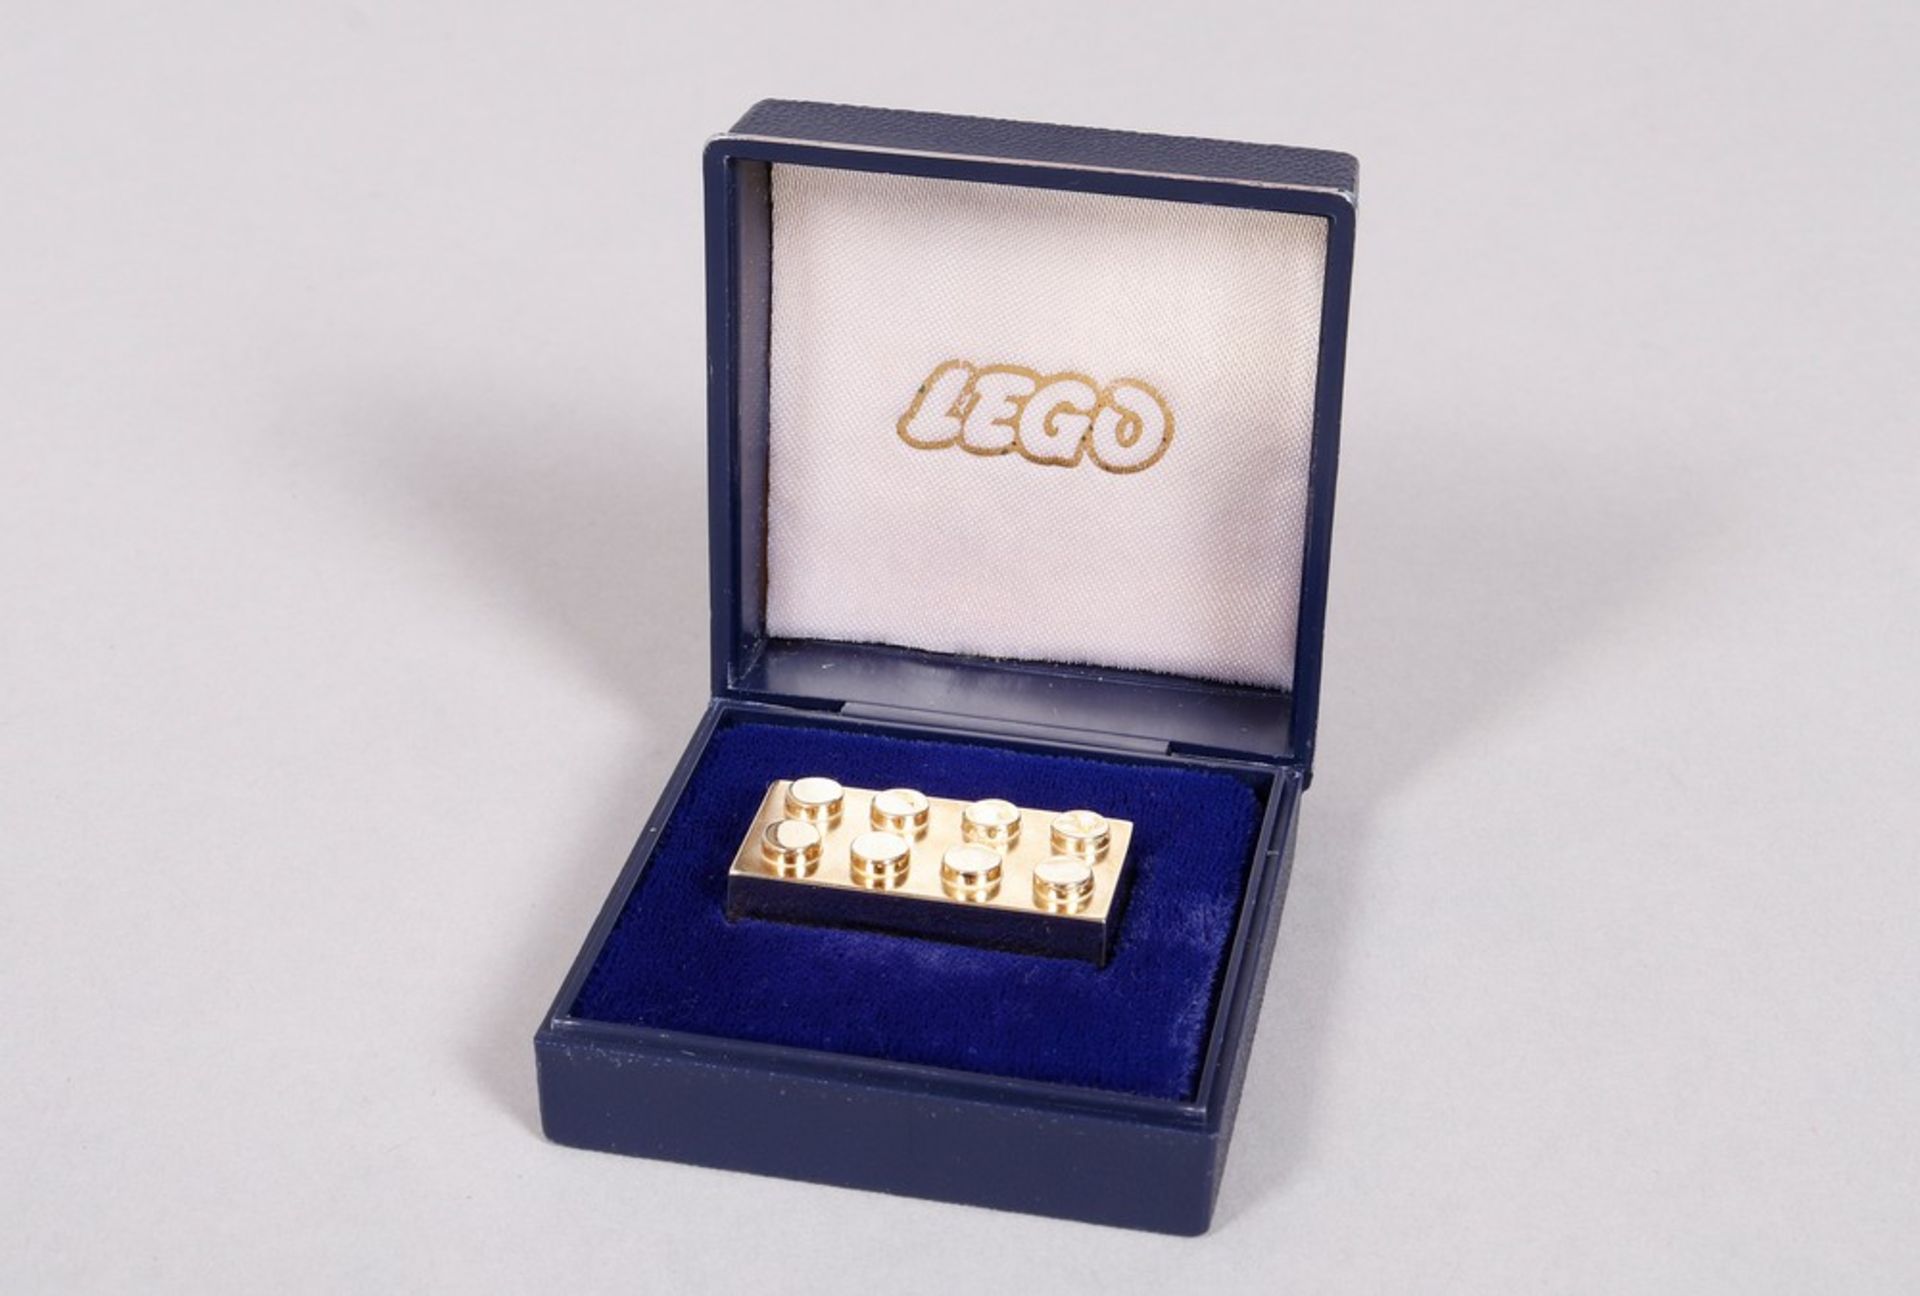 Anniversary Lego brick in box, 585 Gold, c. 1992